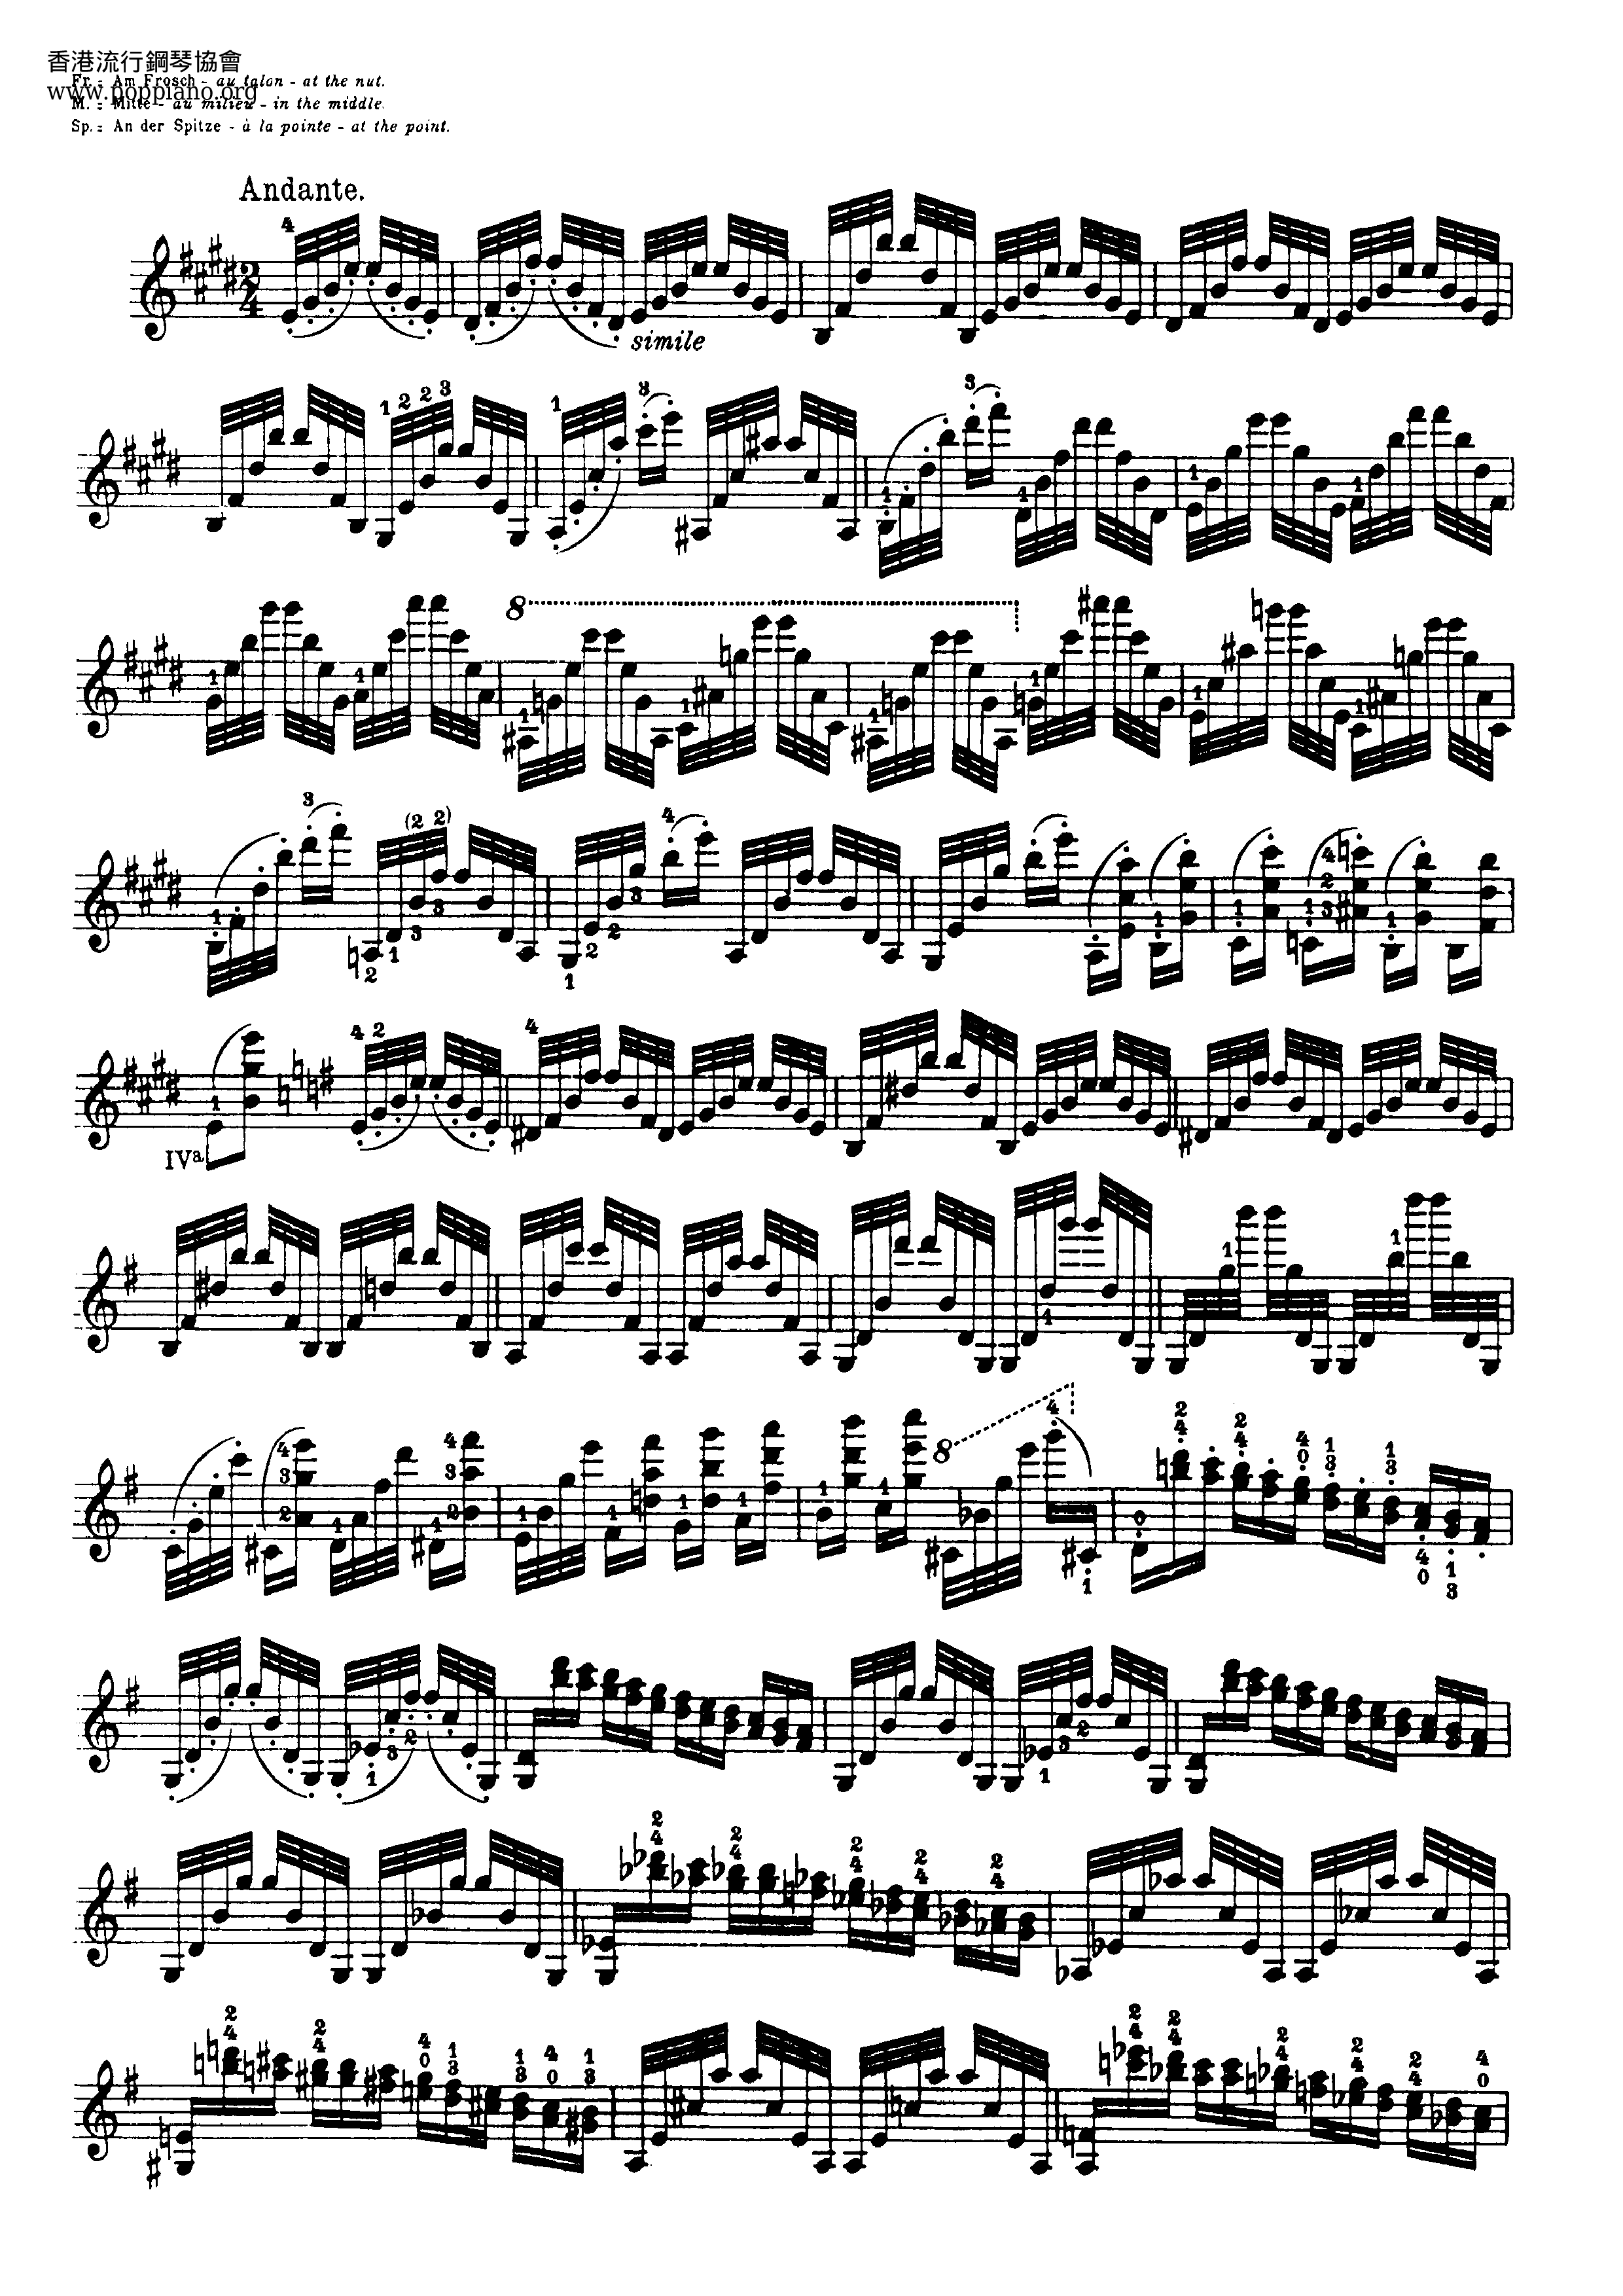 24 Capricesピアノ譜